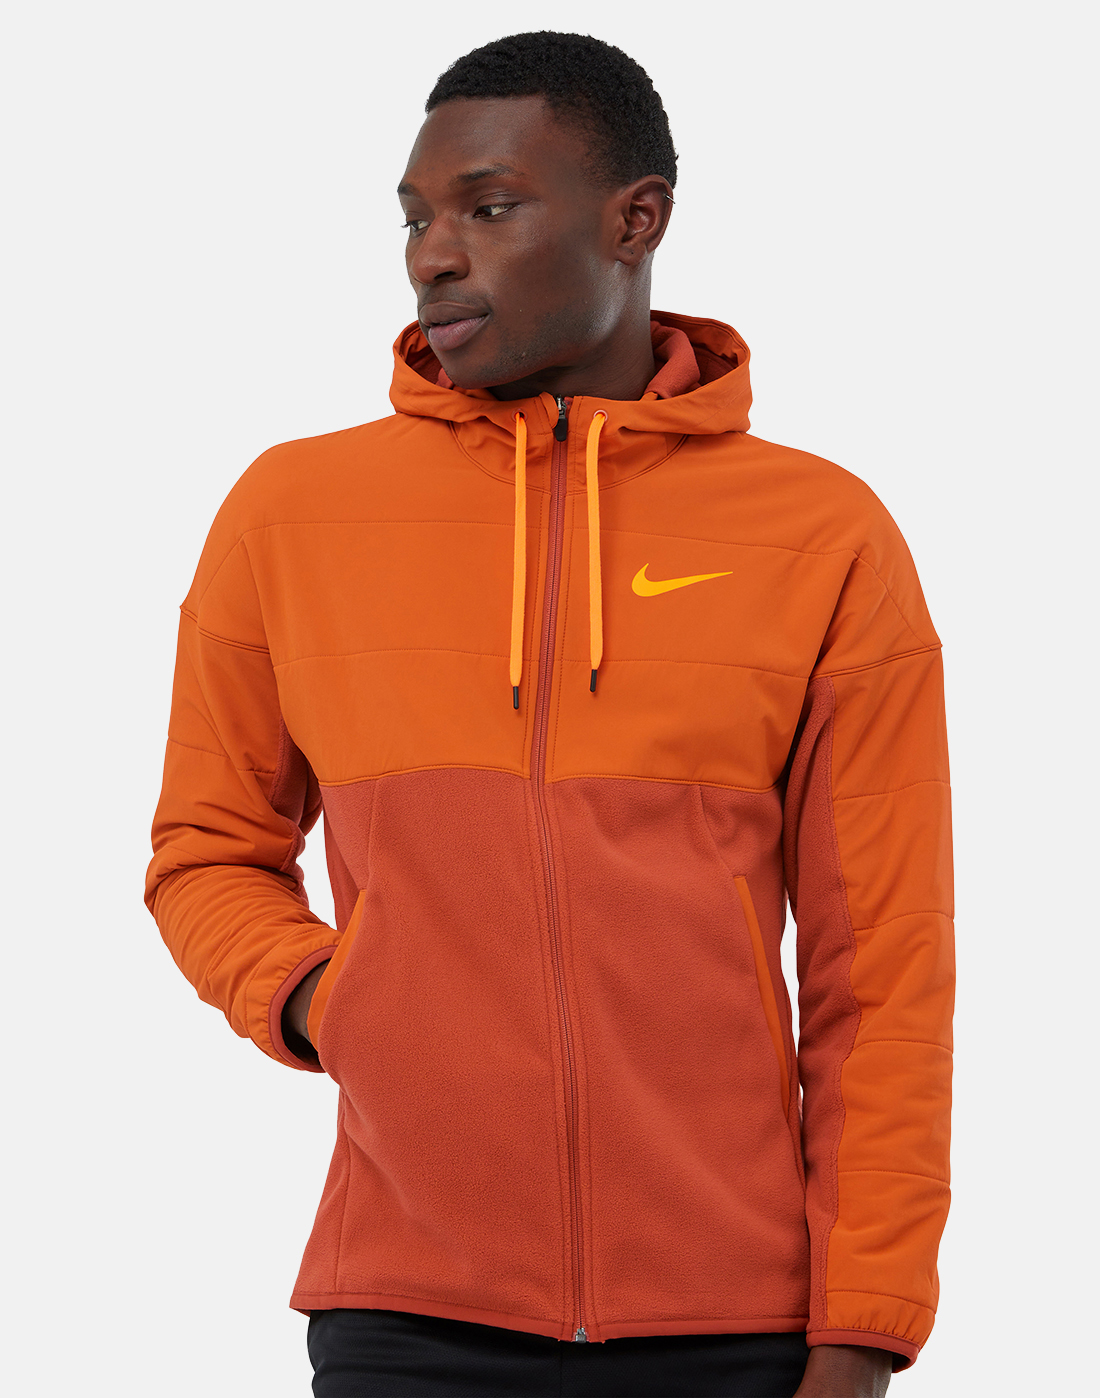 Nike Mens Winterized Full Zip Jacket - Orange | Life Style Sports UK